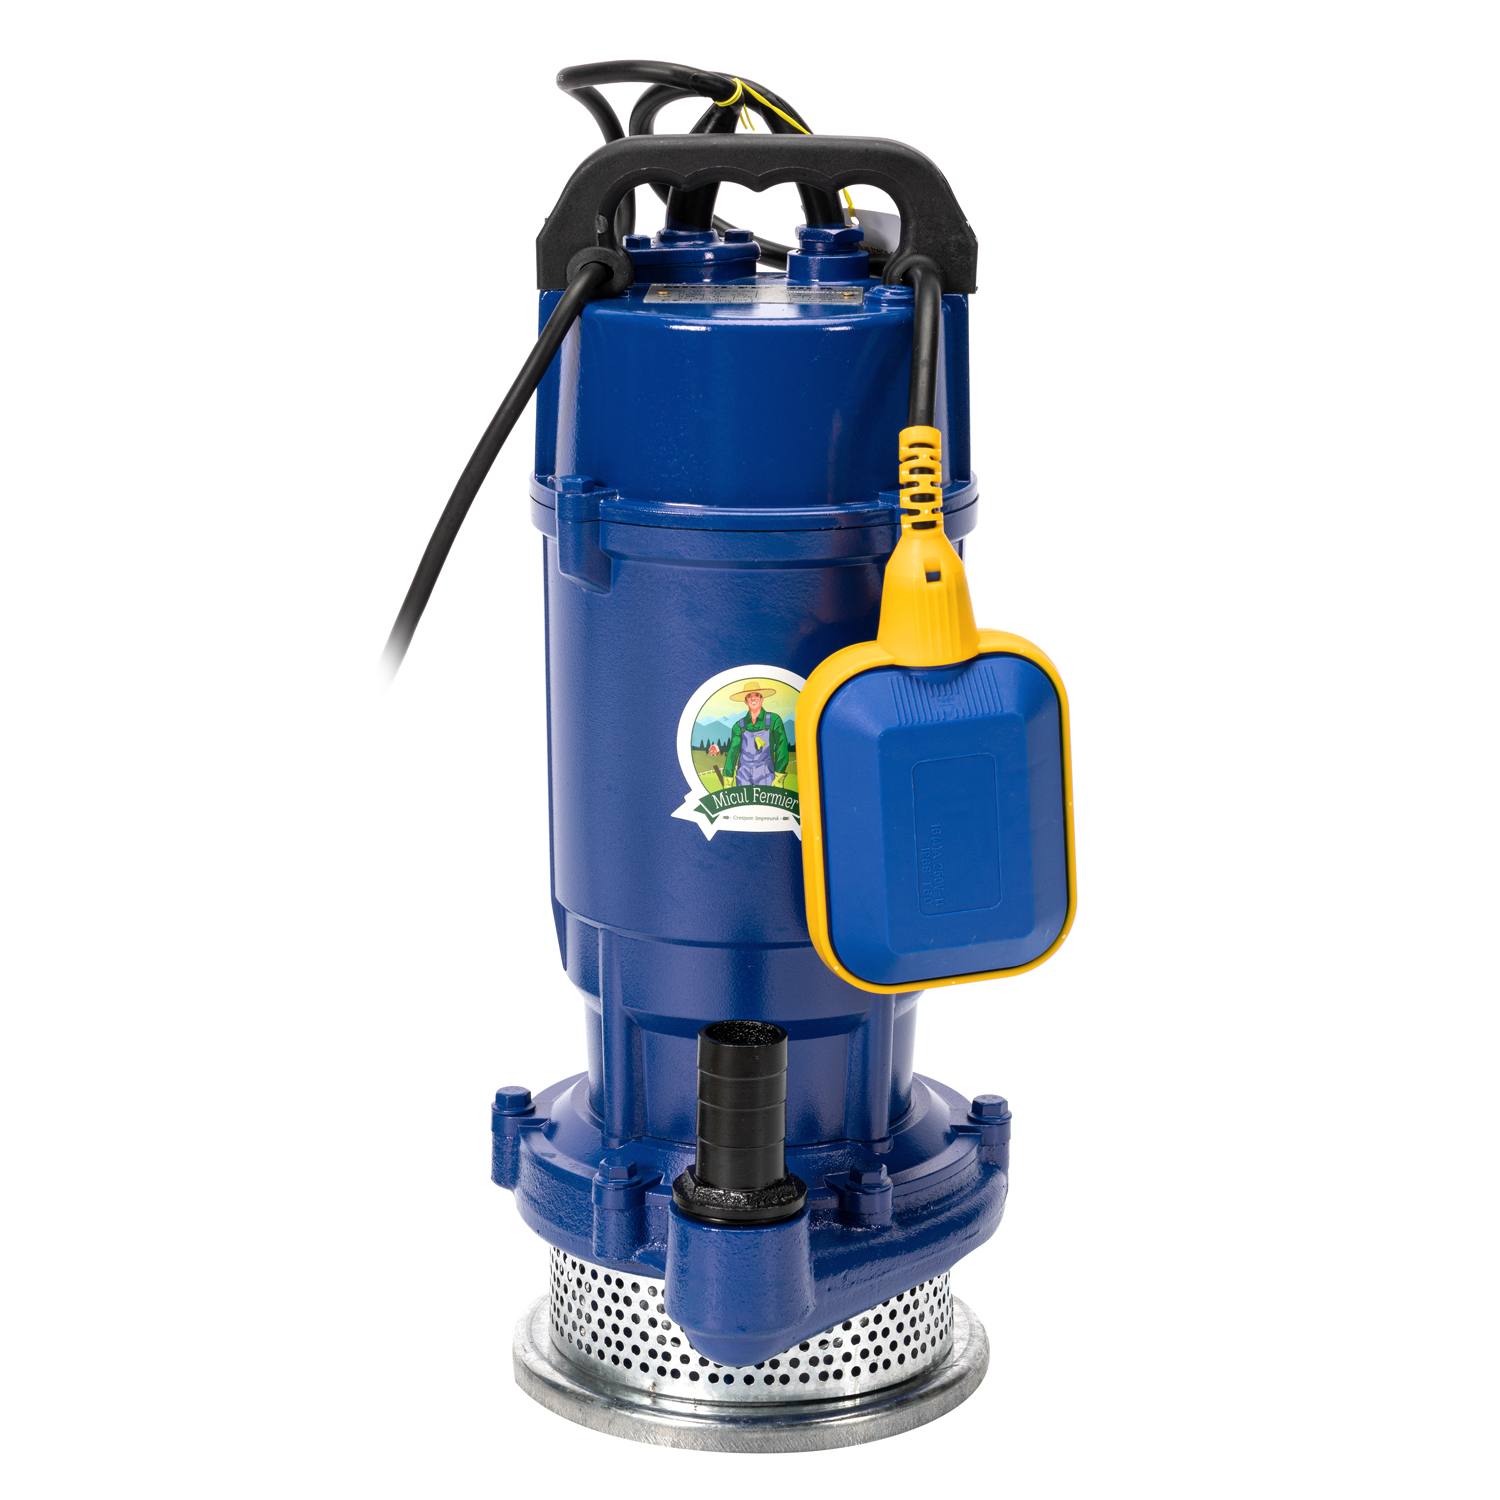 Pompe submersibile - Pompa apa submersibila 20m 0,55kW Micul Fermier, bricolajmarket.ro